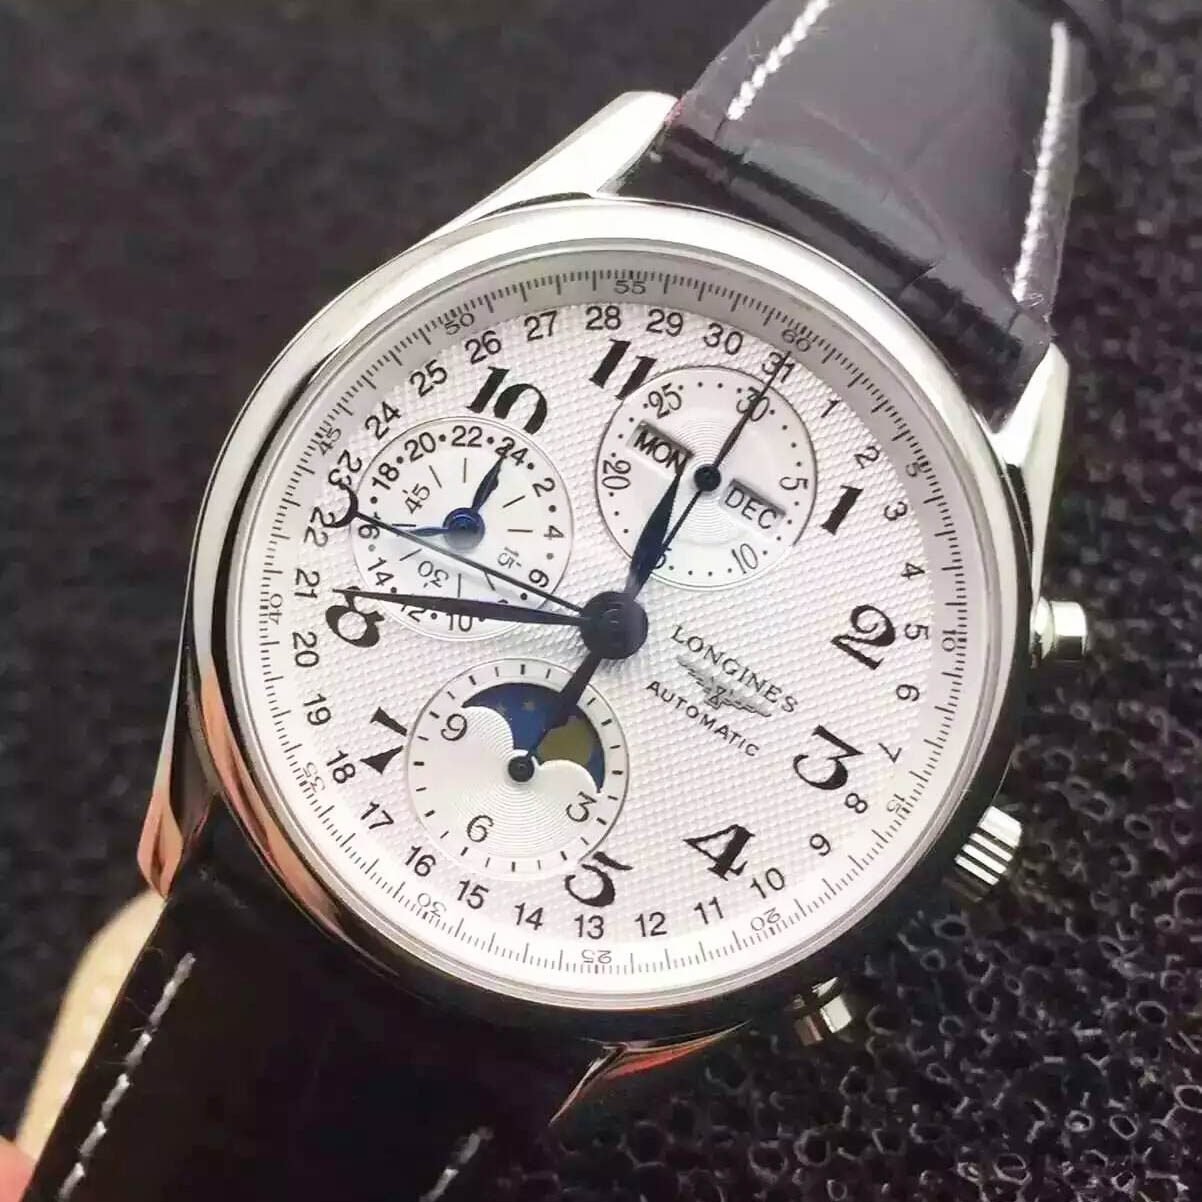 浪琴 Longines 月相腕錶巴塞爾錶展熱款搭載7750自動上鏈機芯